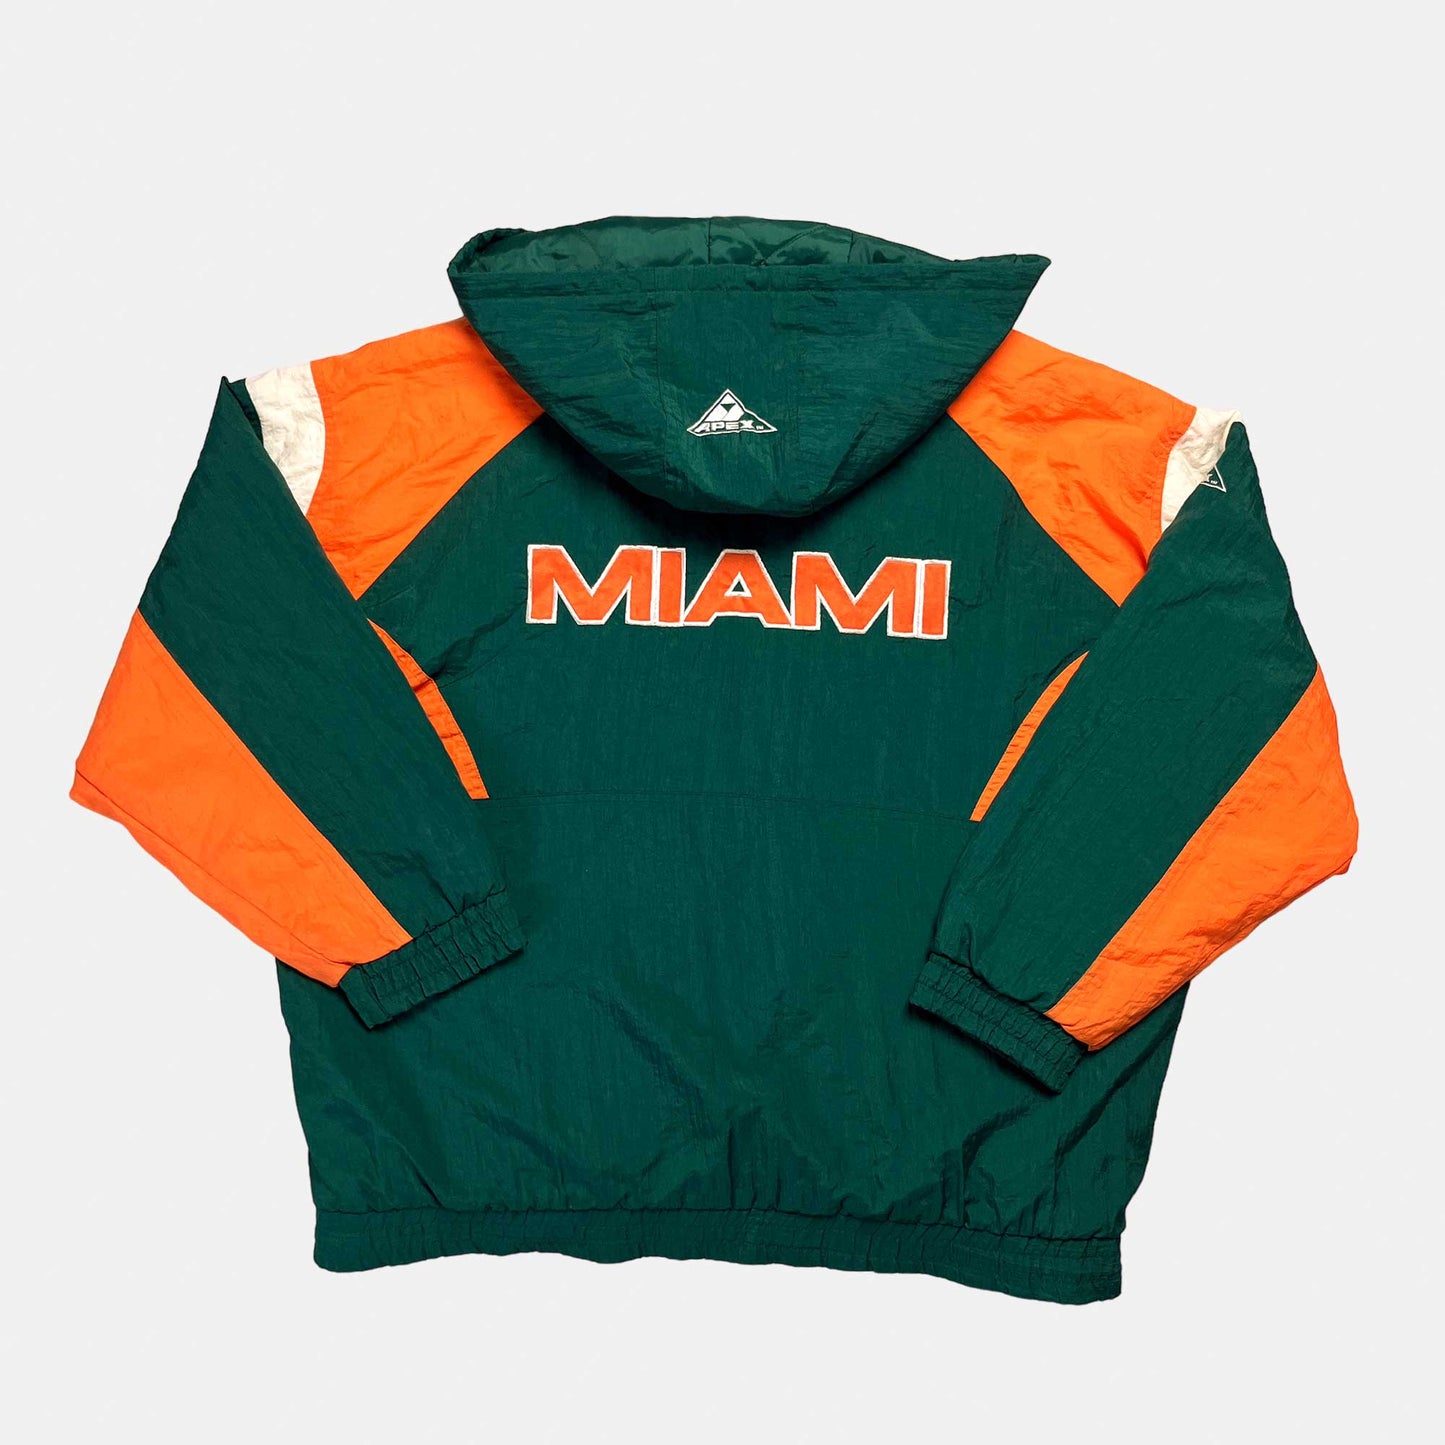 Miami Hurricanes - gefütterte NCAA Jacke - Größe XL - Apex One